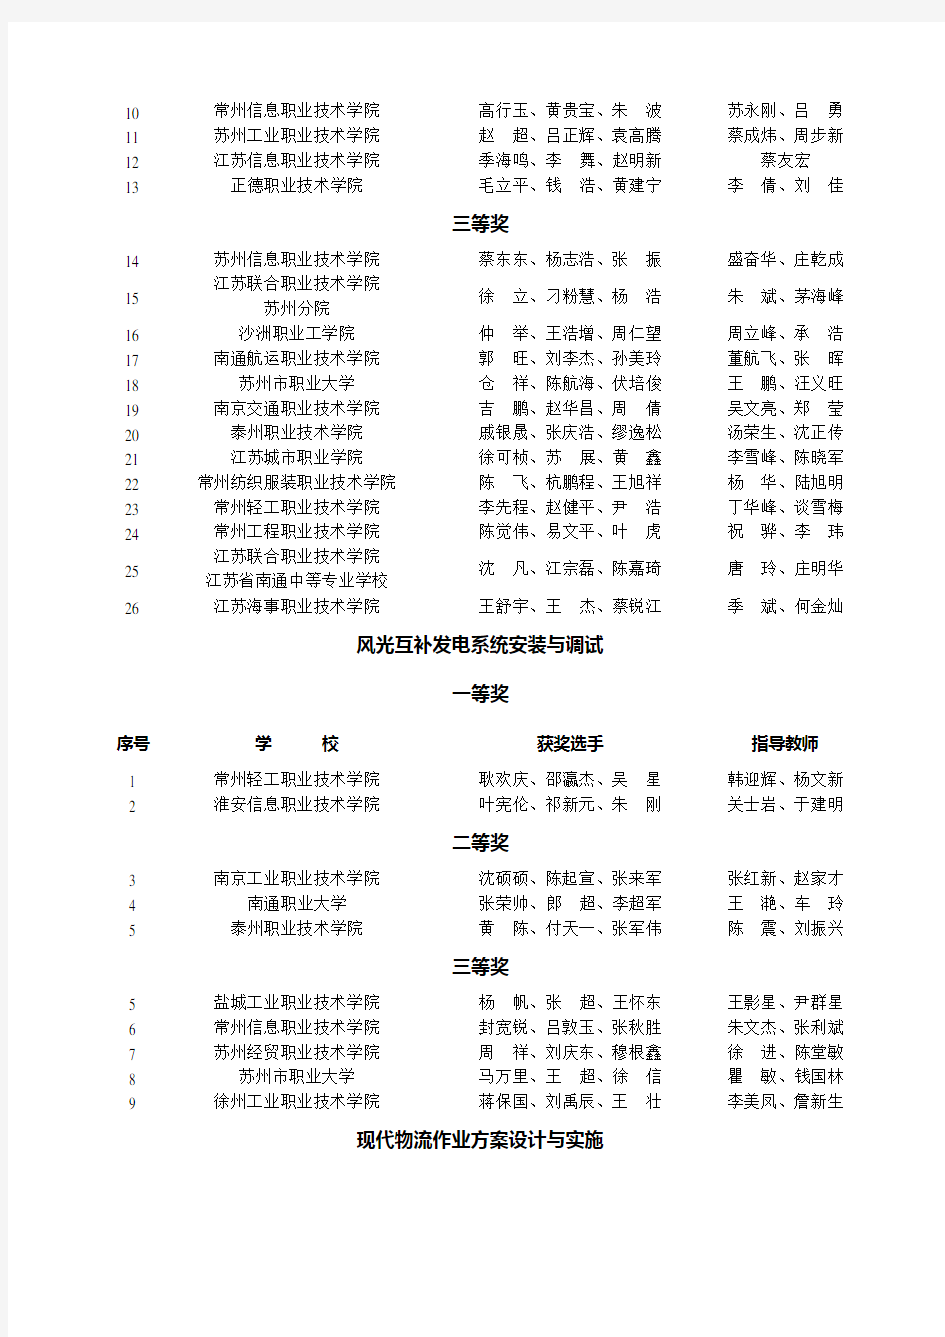 2015年江苏省高等职业院校技能大赛获奖名单